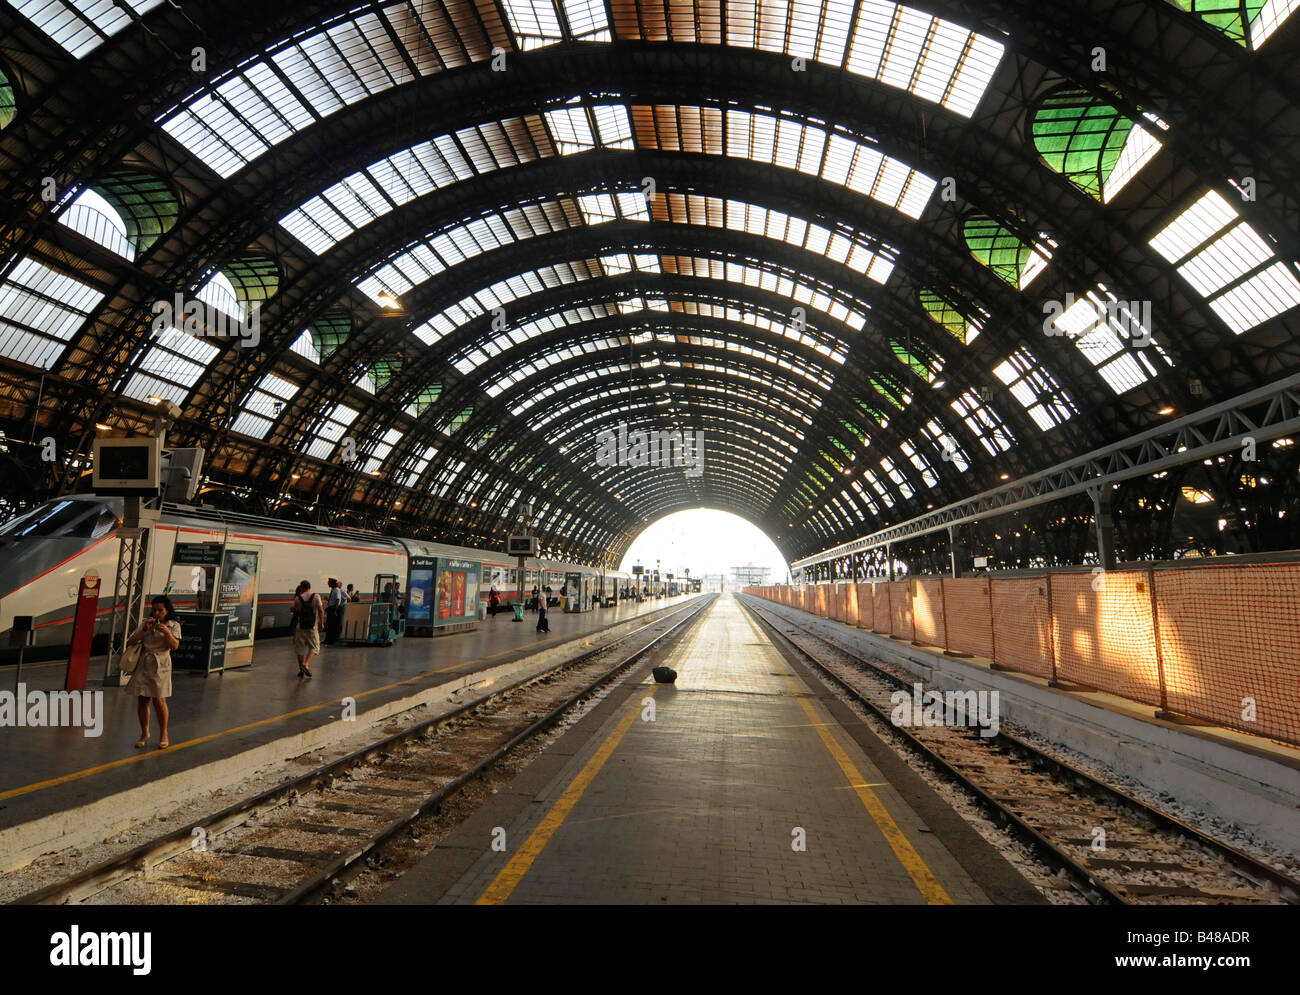 Intérieur de la gare centrale de Milan, qui est célèbre pour son grand dôme en verre. Photo prise à Milan, Italie. Banque D'Images